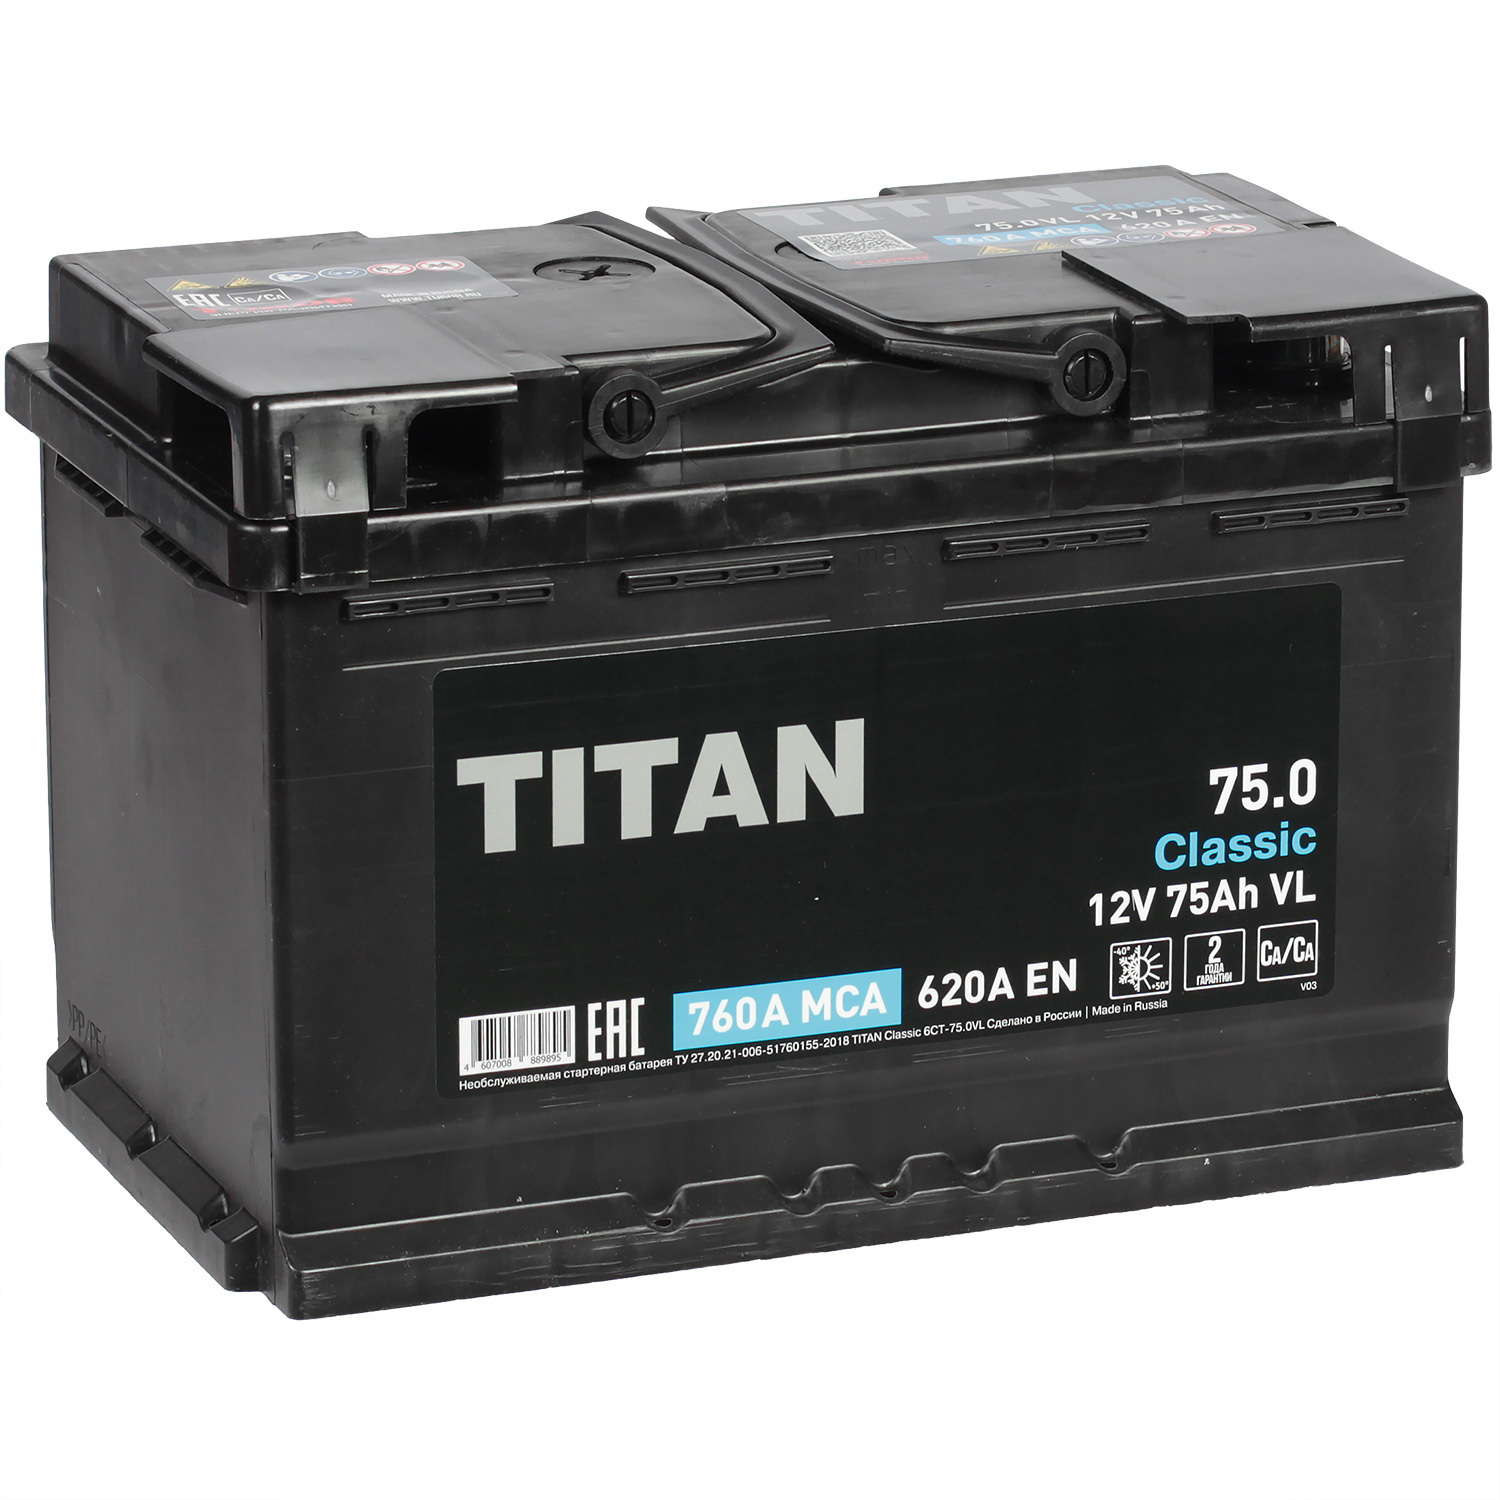 Titan Автомобильный аккумулятор Titan 75 Ач обратная полярность L3 titan автомобильный аккумулятор titan efb 75 ач обратная полярность l3